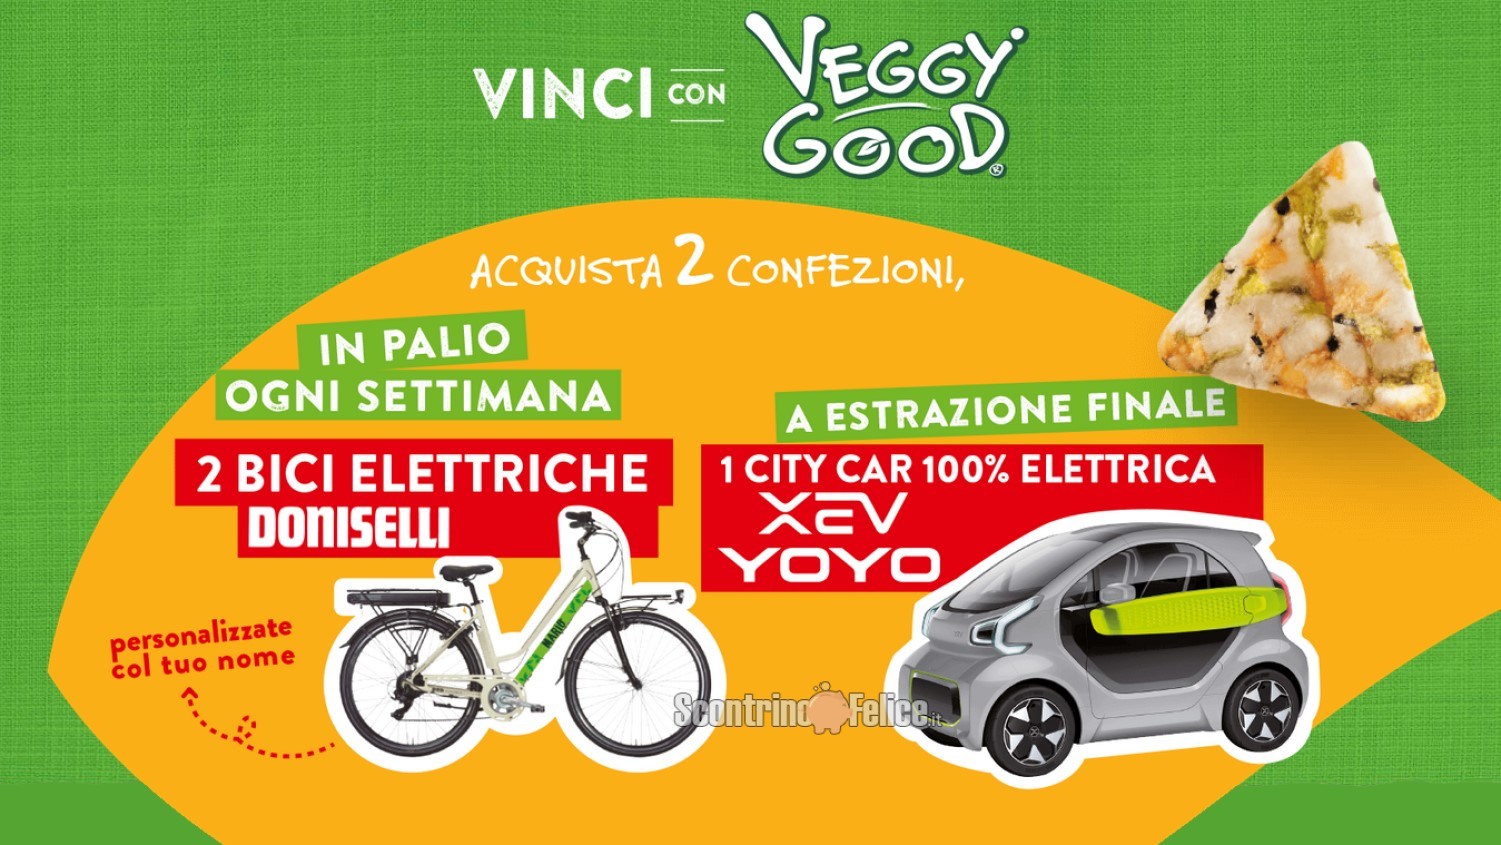 Concorso "Vinci con San Carlo Veggy Good": in palio Bici Elettriche Doniselli e City Car elettrica XEV YOYO